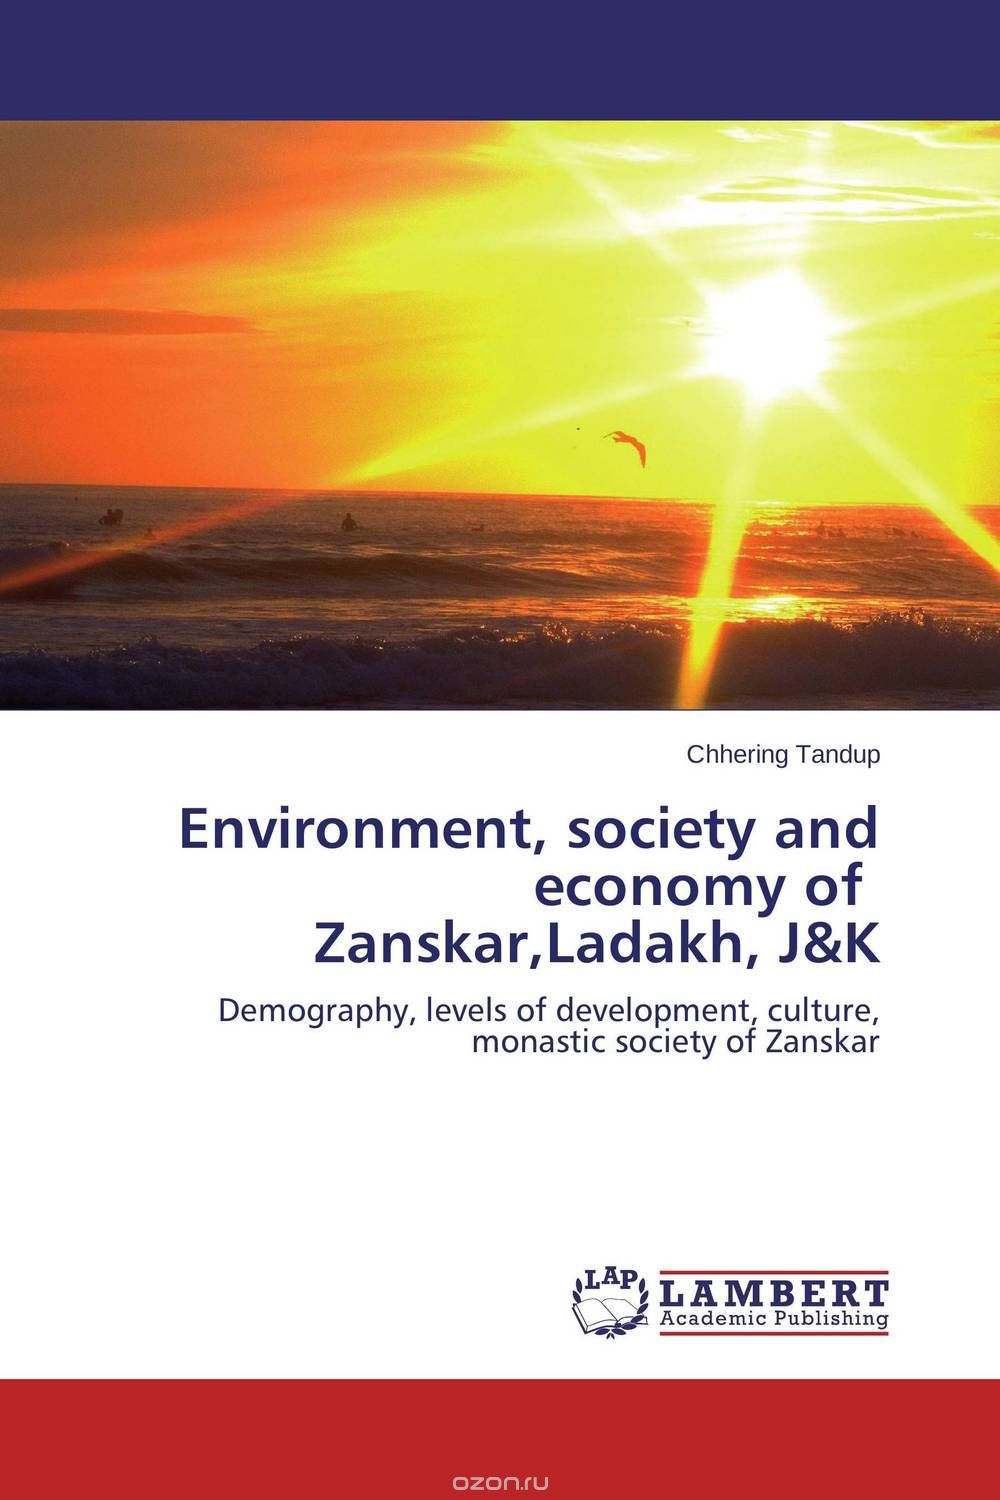 Скачать книгу "Environment, society and economy of Zanskar,Ladakh, J&K"